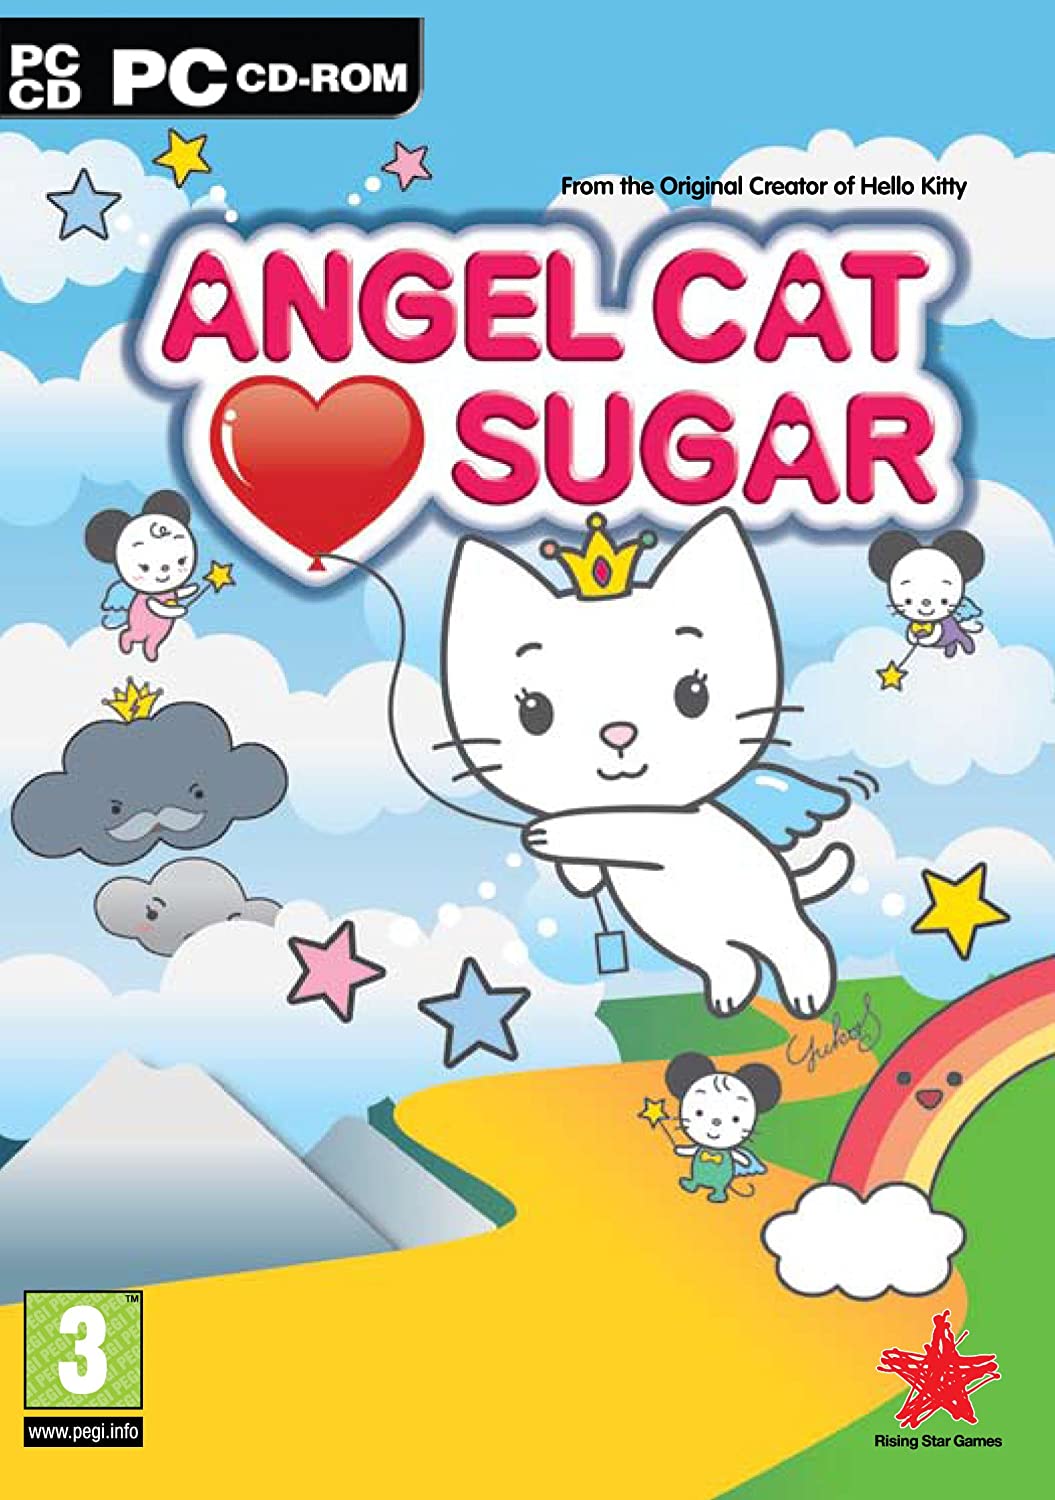 Zucchero gatto angelo (DVD PC)